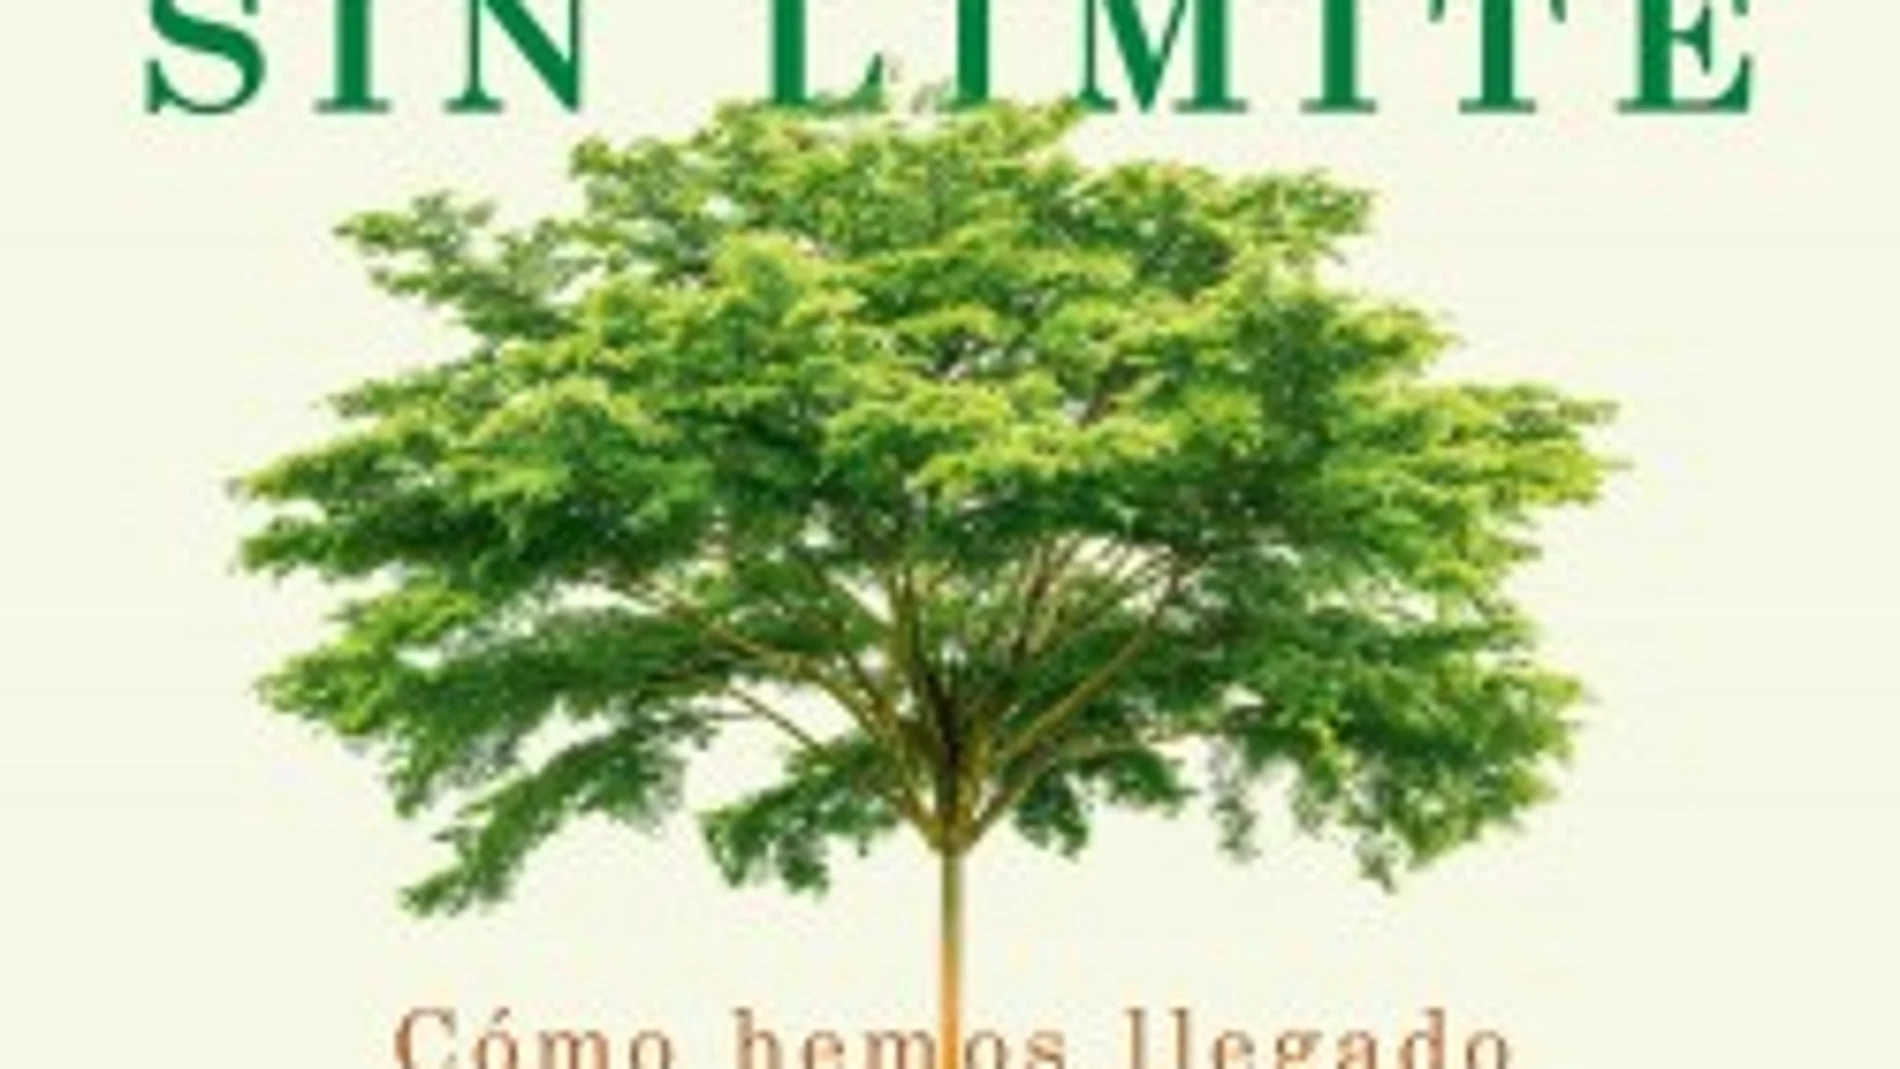 "El afán sin límite", Hope Jahren